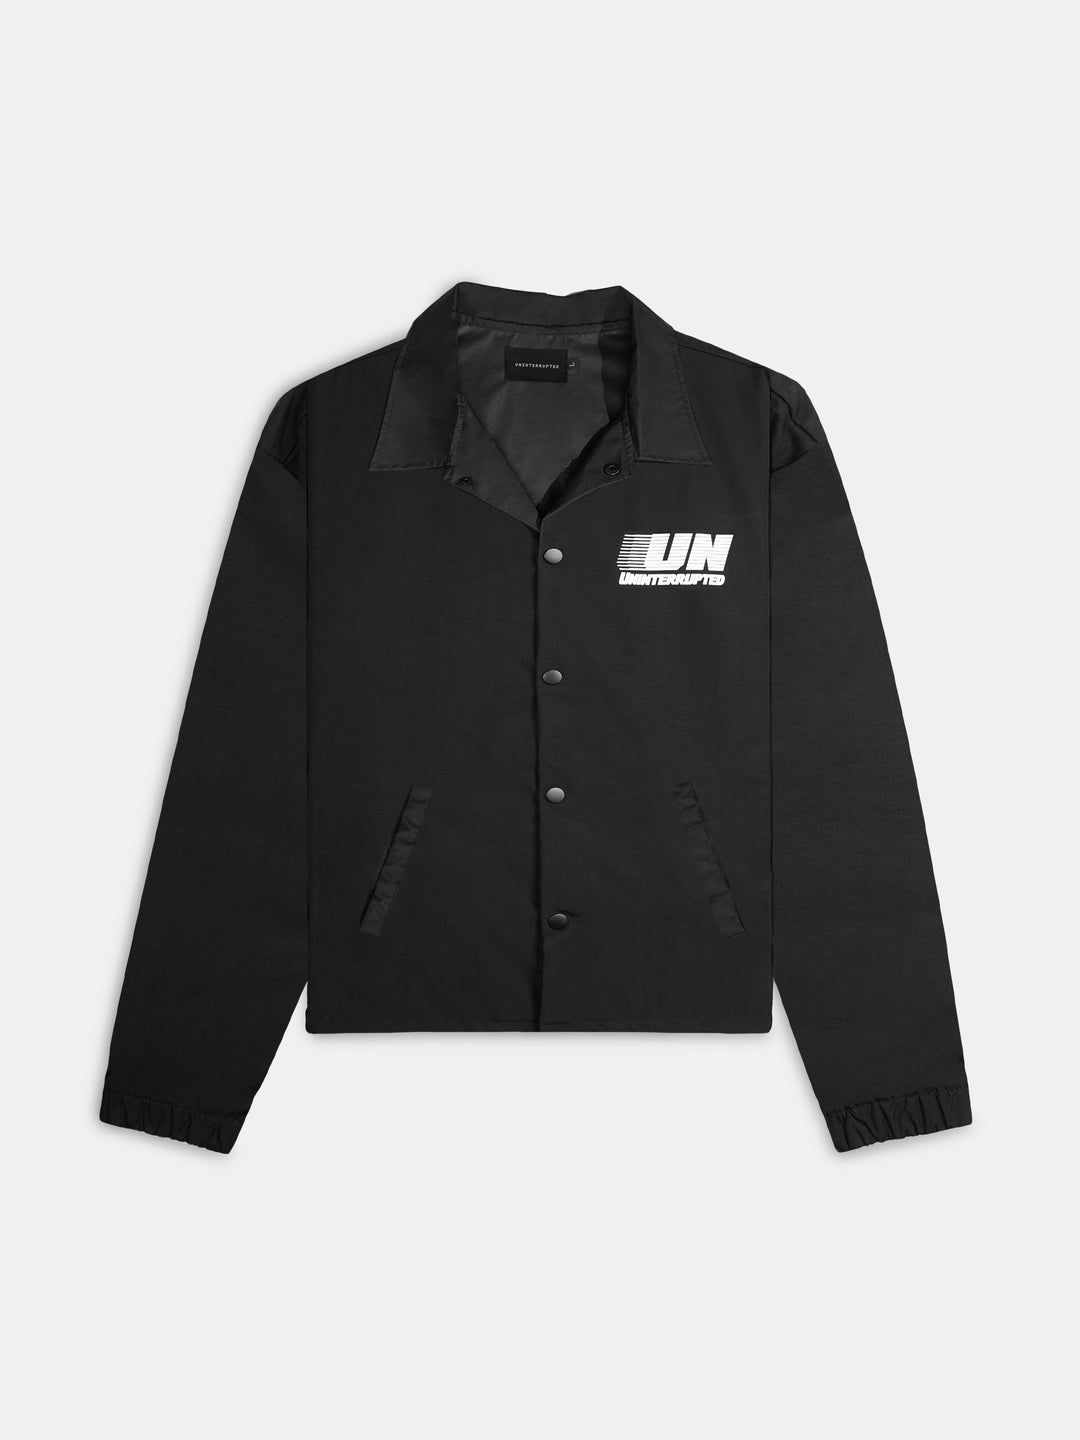 EP NY Long Sleeve Brushed Jersey Jacket - Black - S